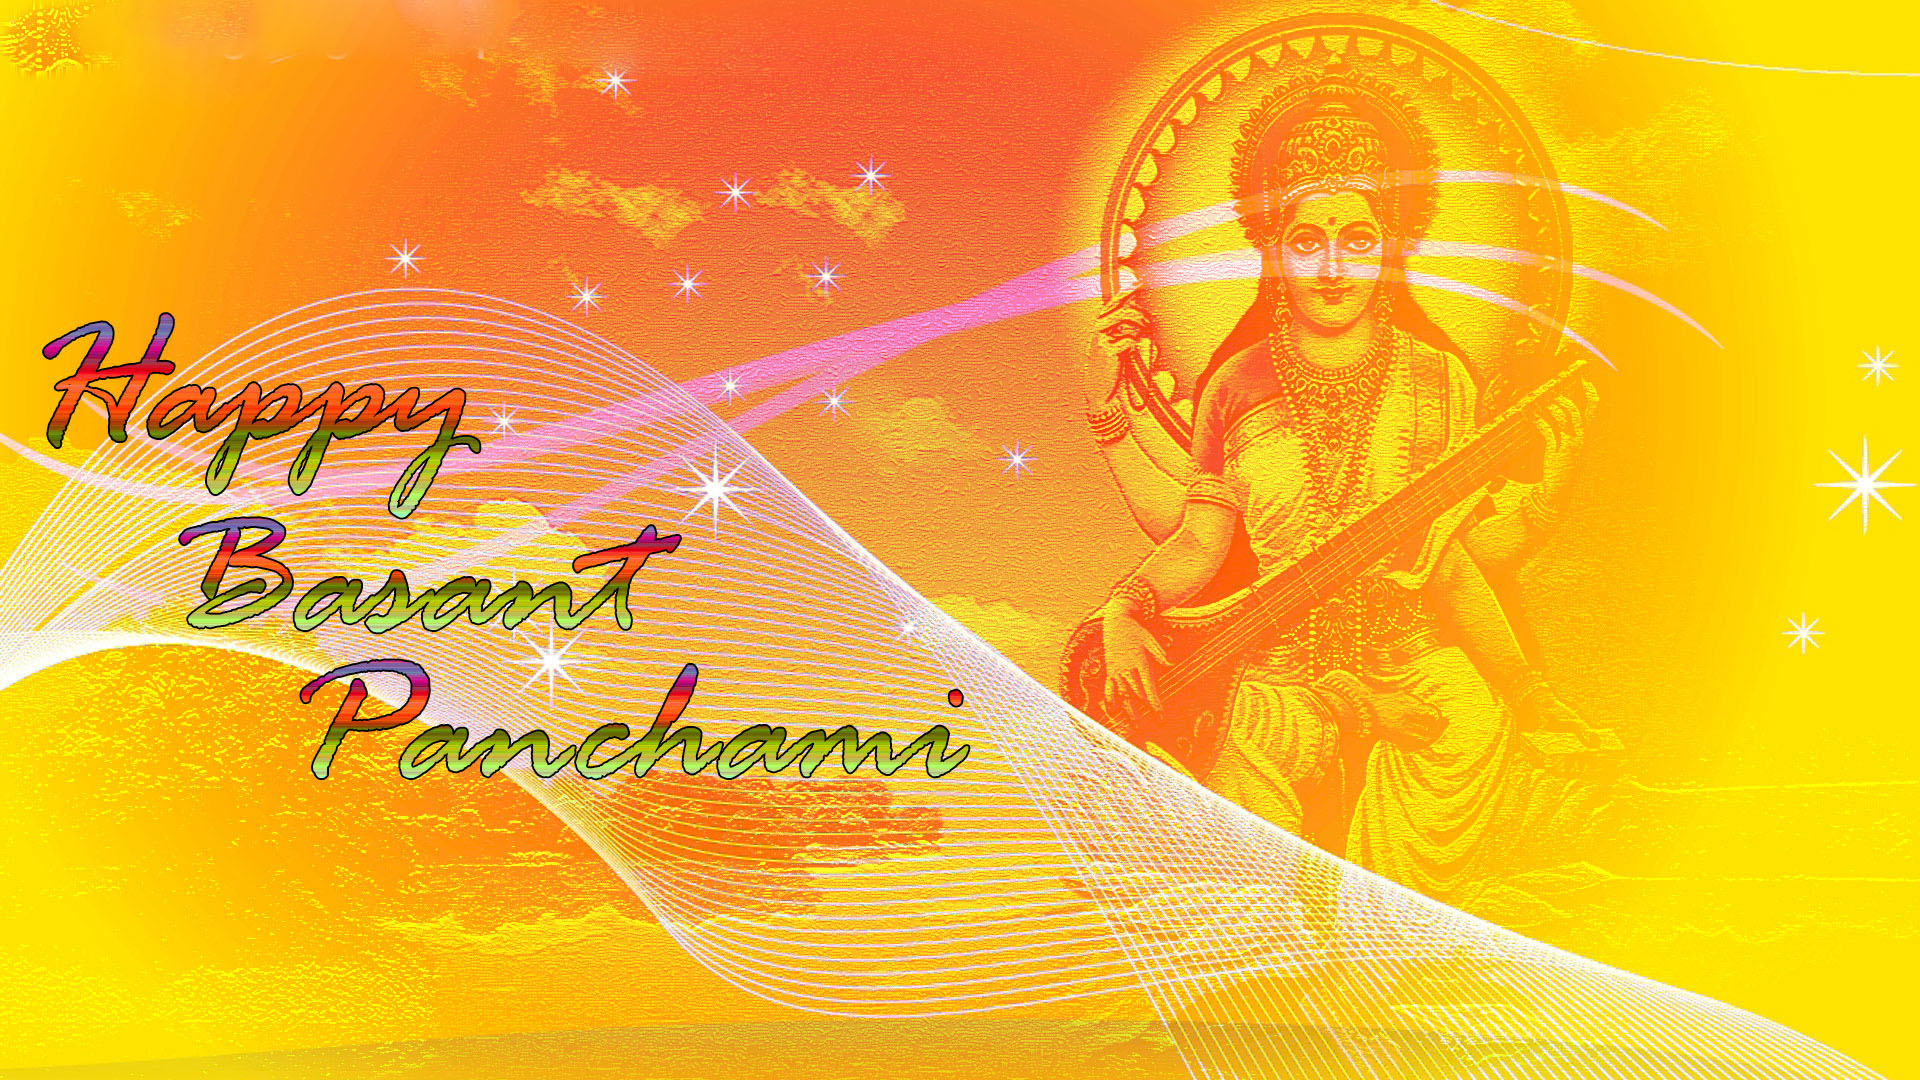 Happy Basant Panchami Hd Images Download